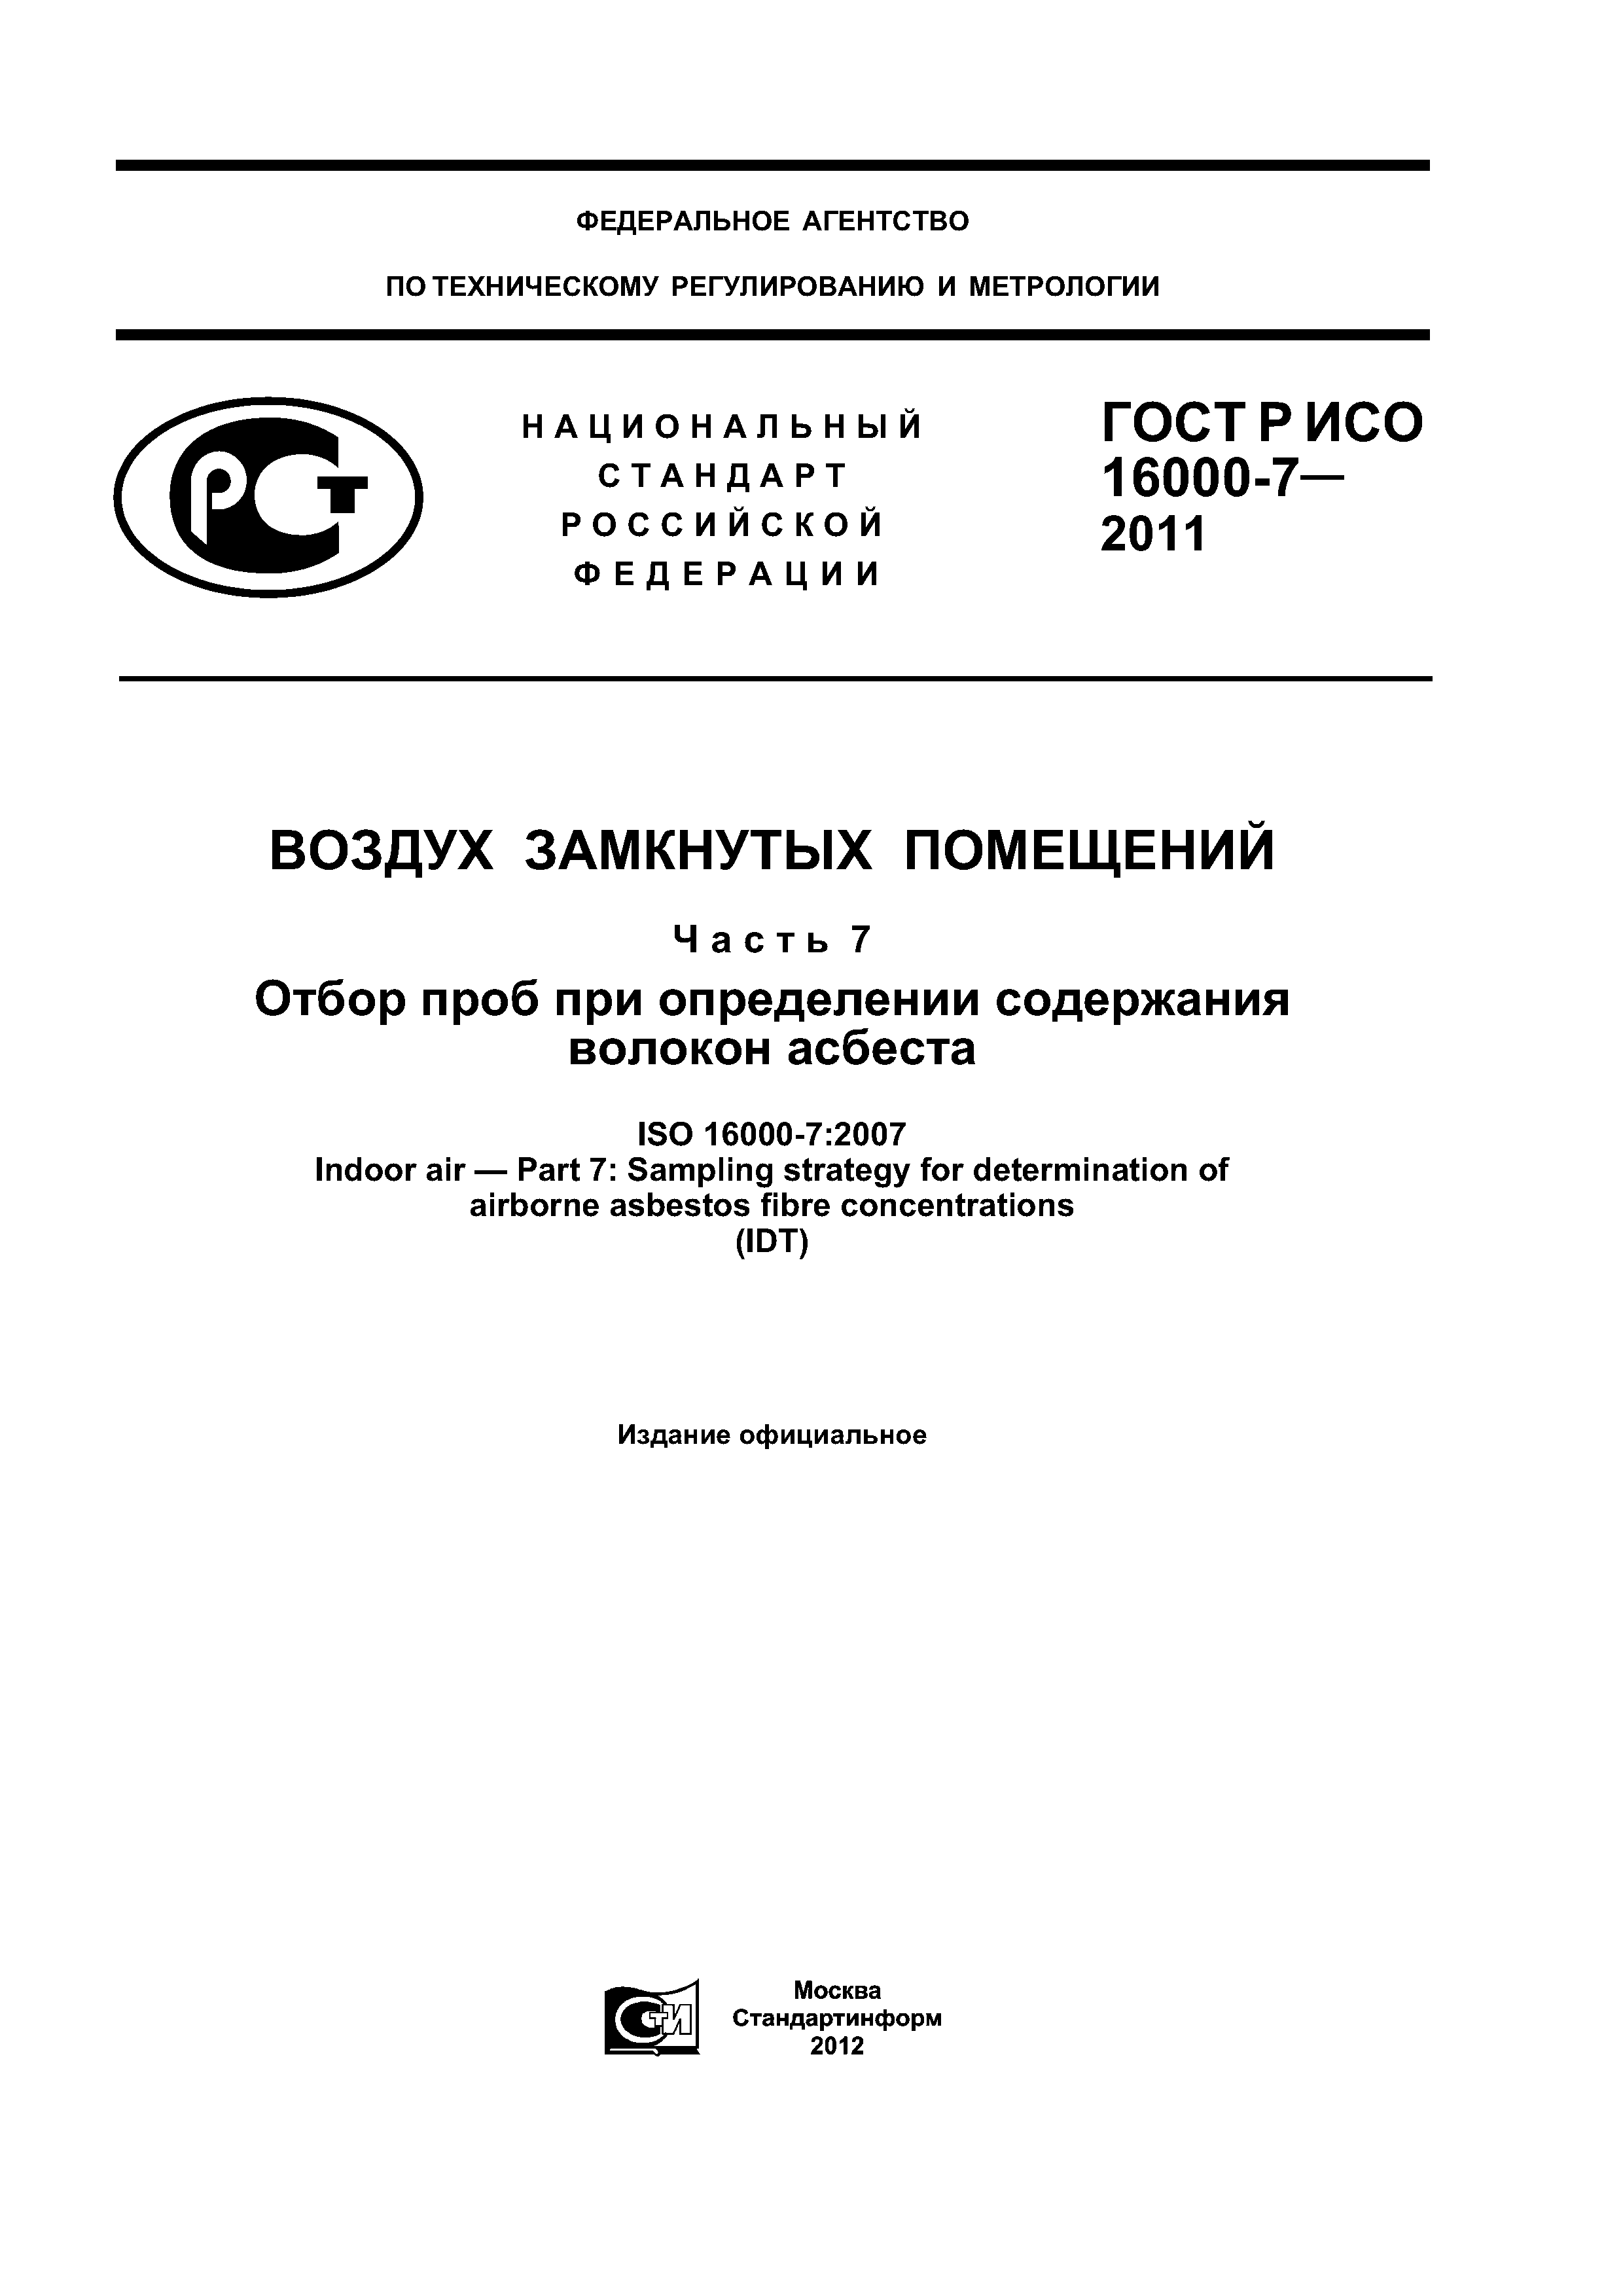 ГОСТ Р ИСО 16000-7-2011